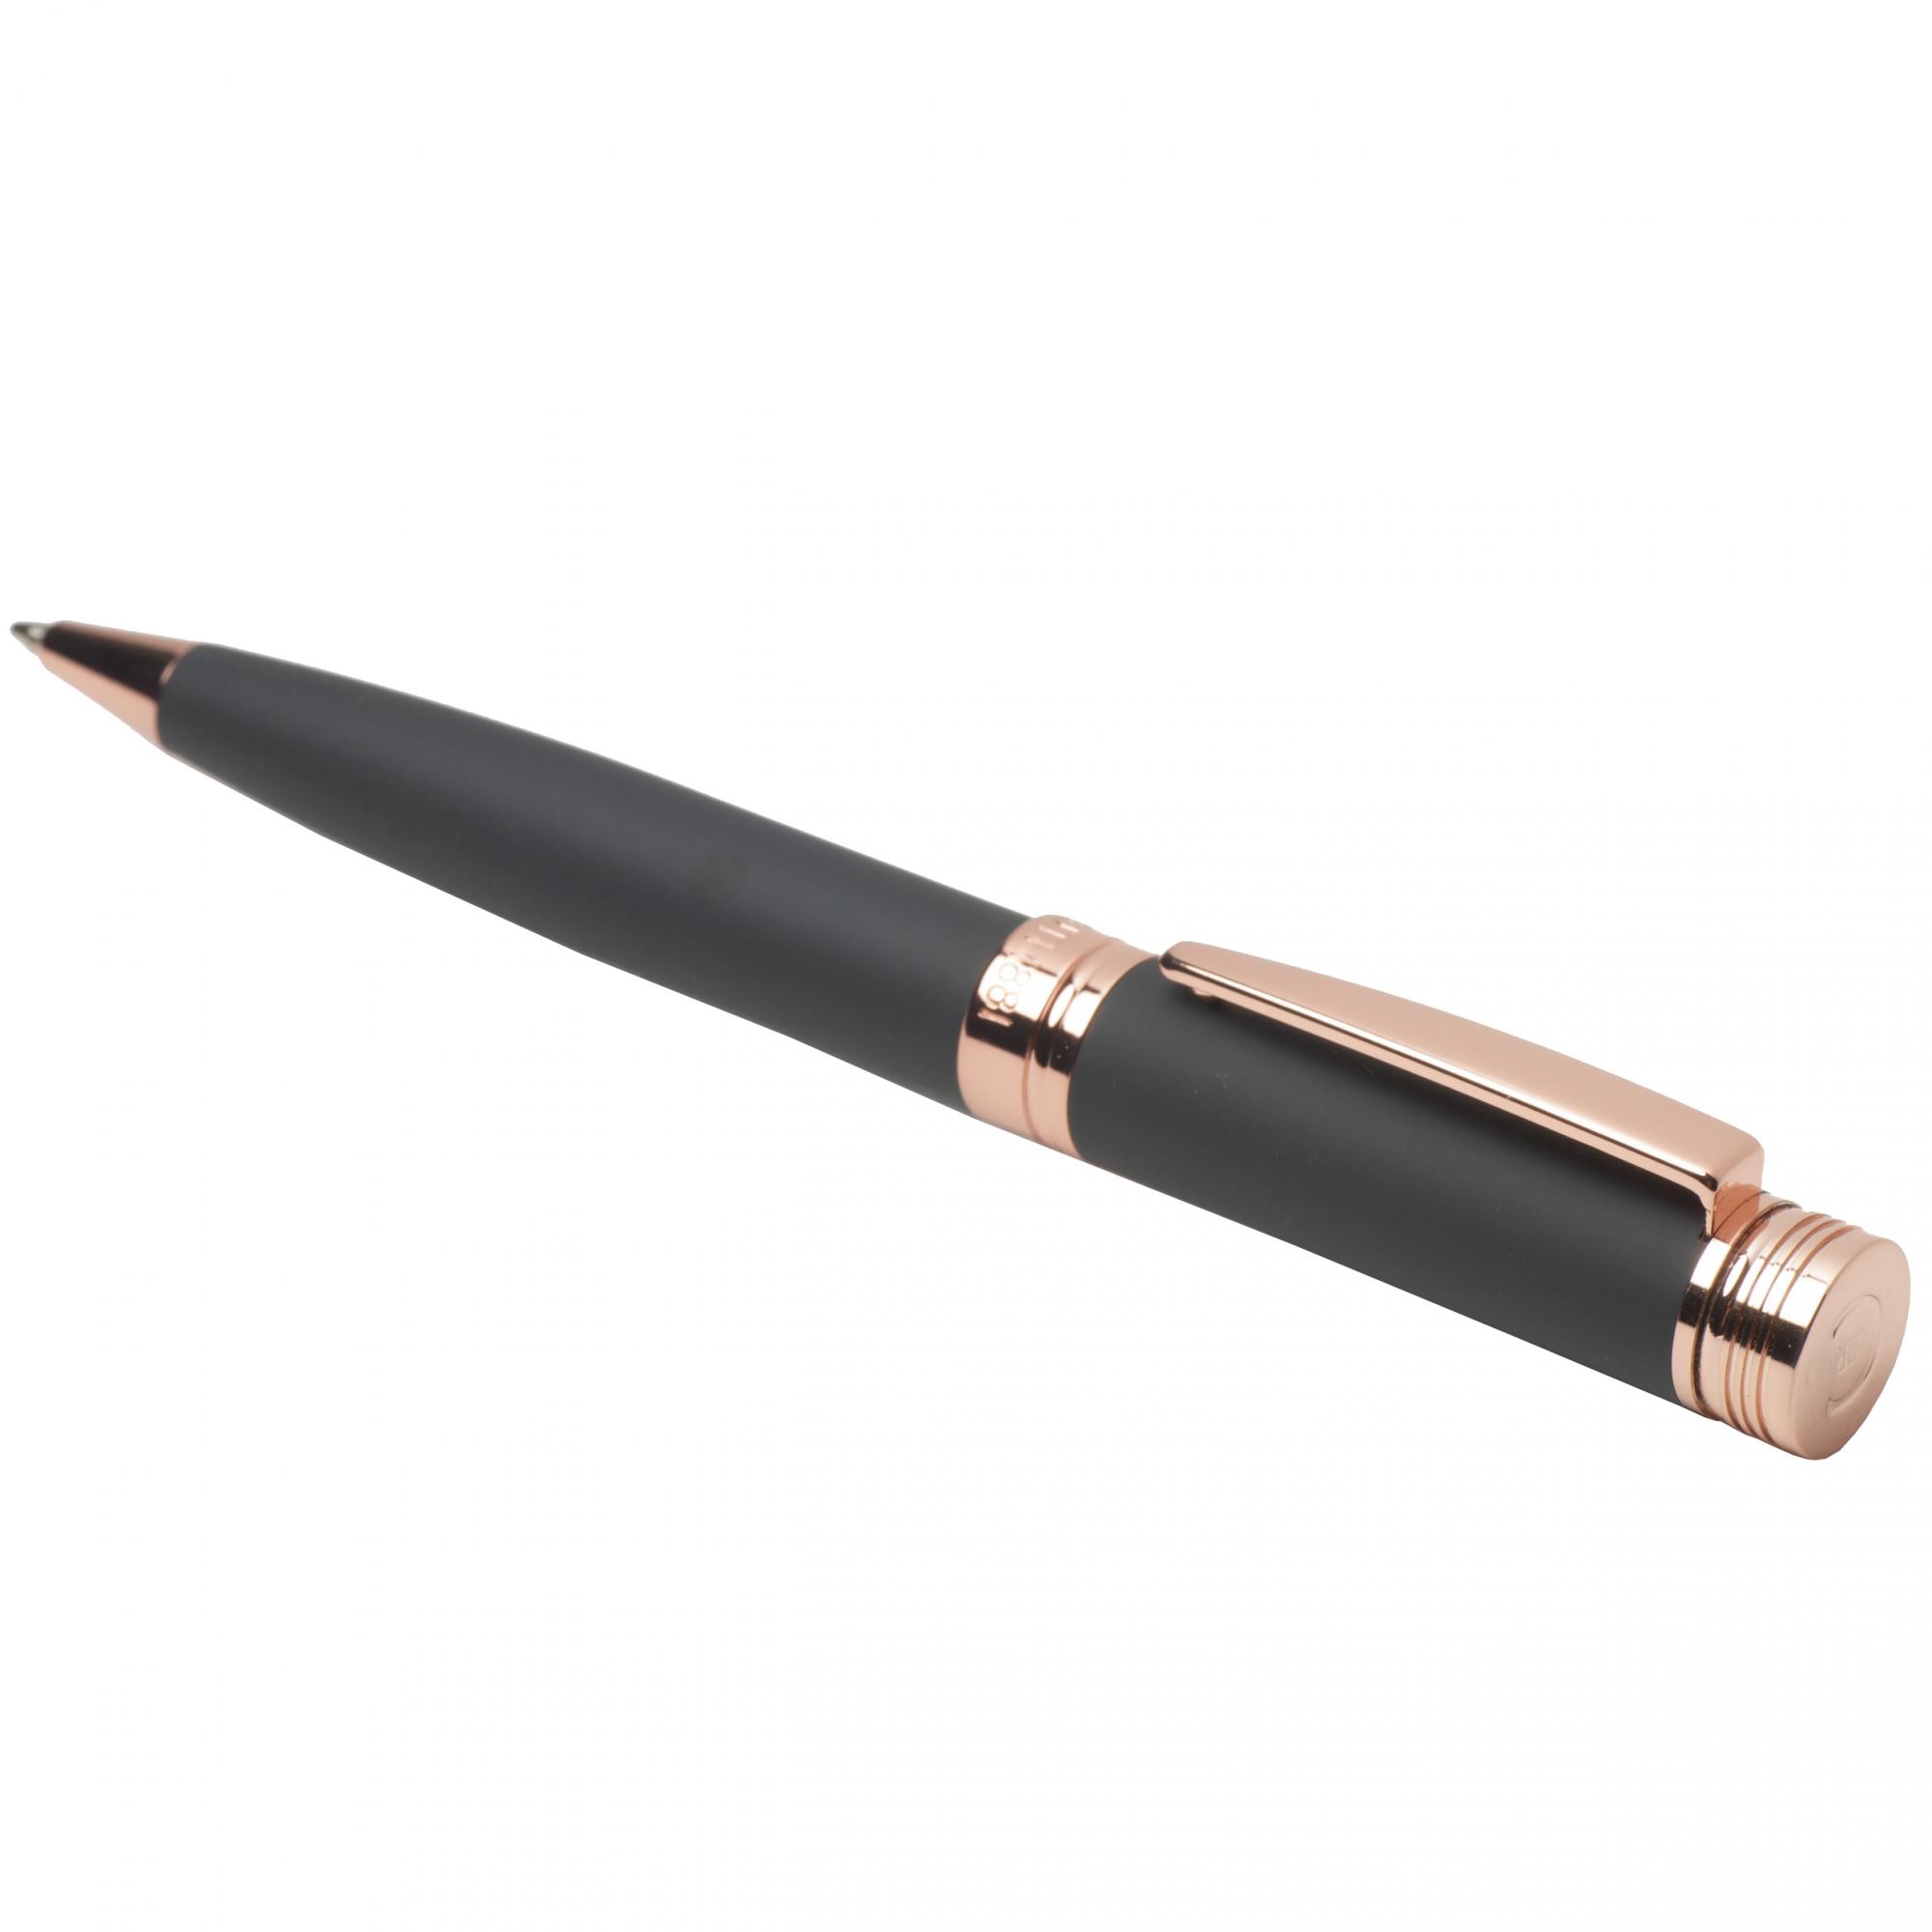 Ручка шариковая Zoom Soft Navy, цвет черный, фото 1